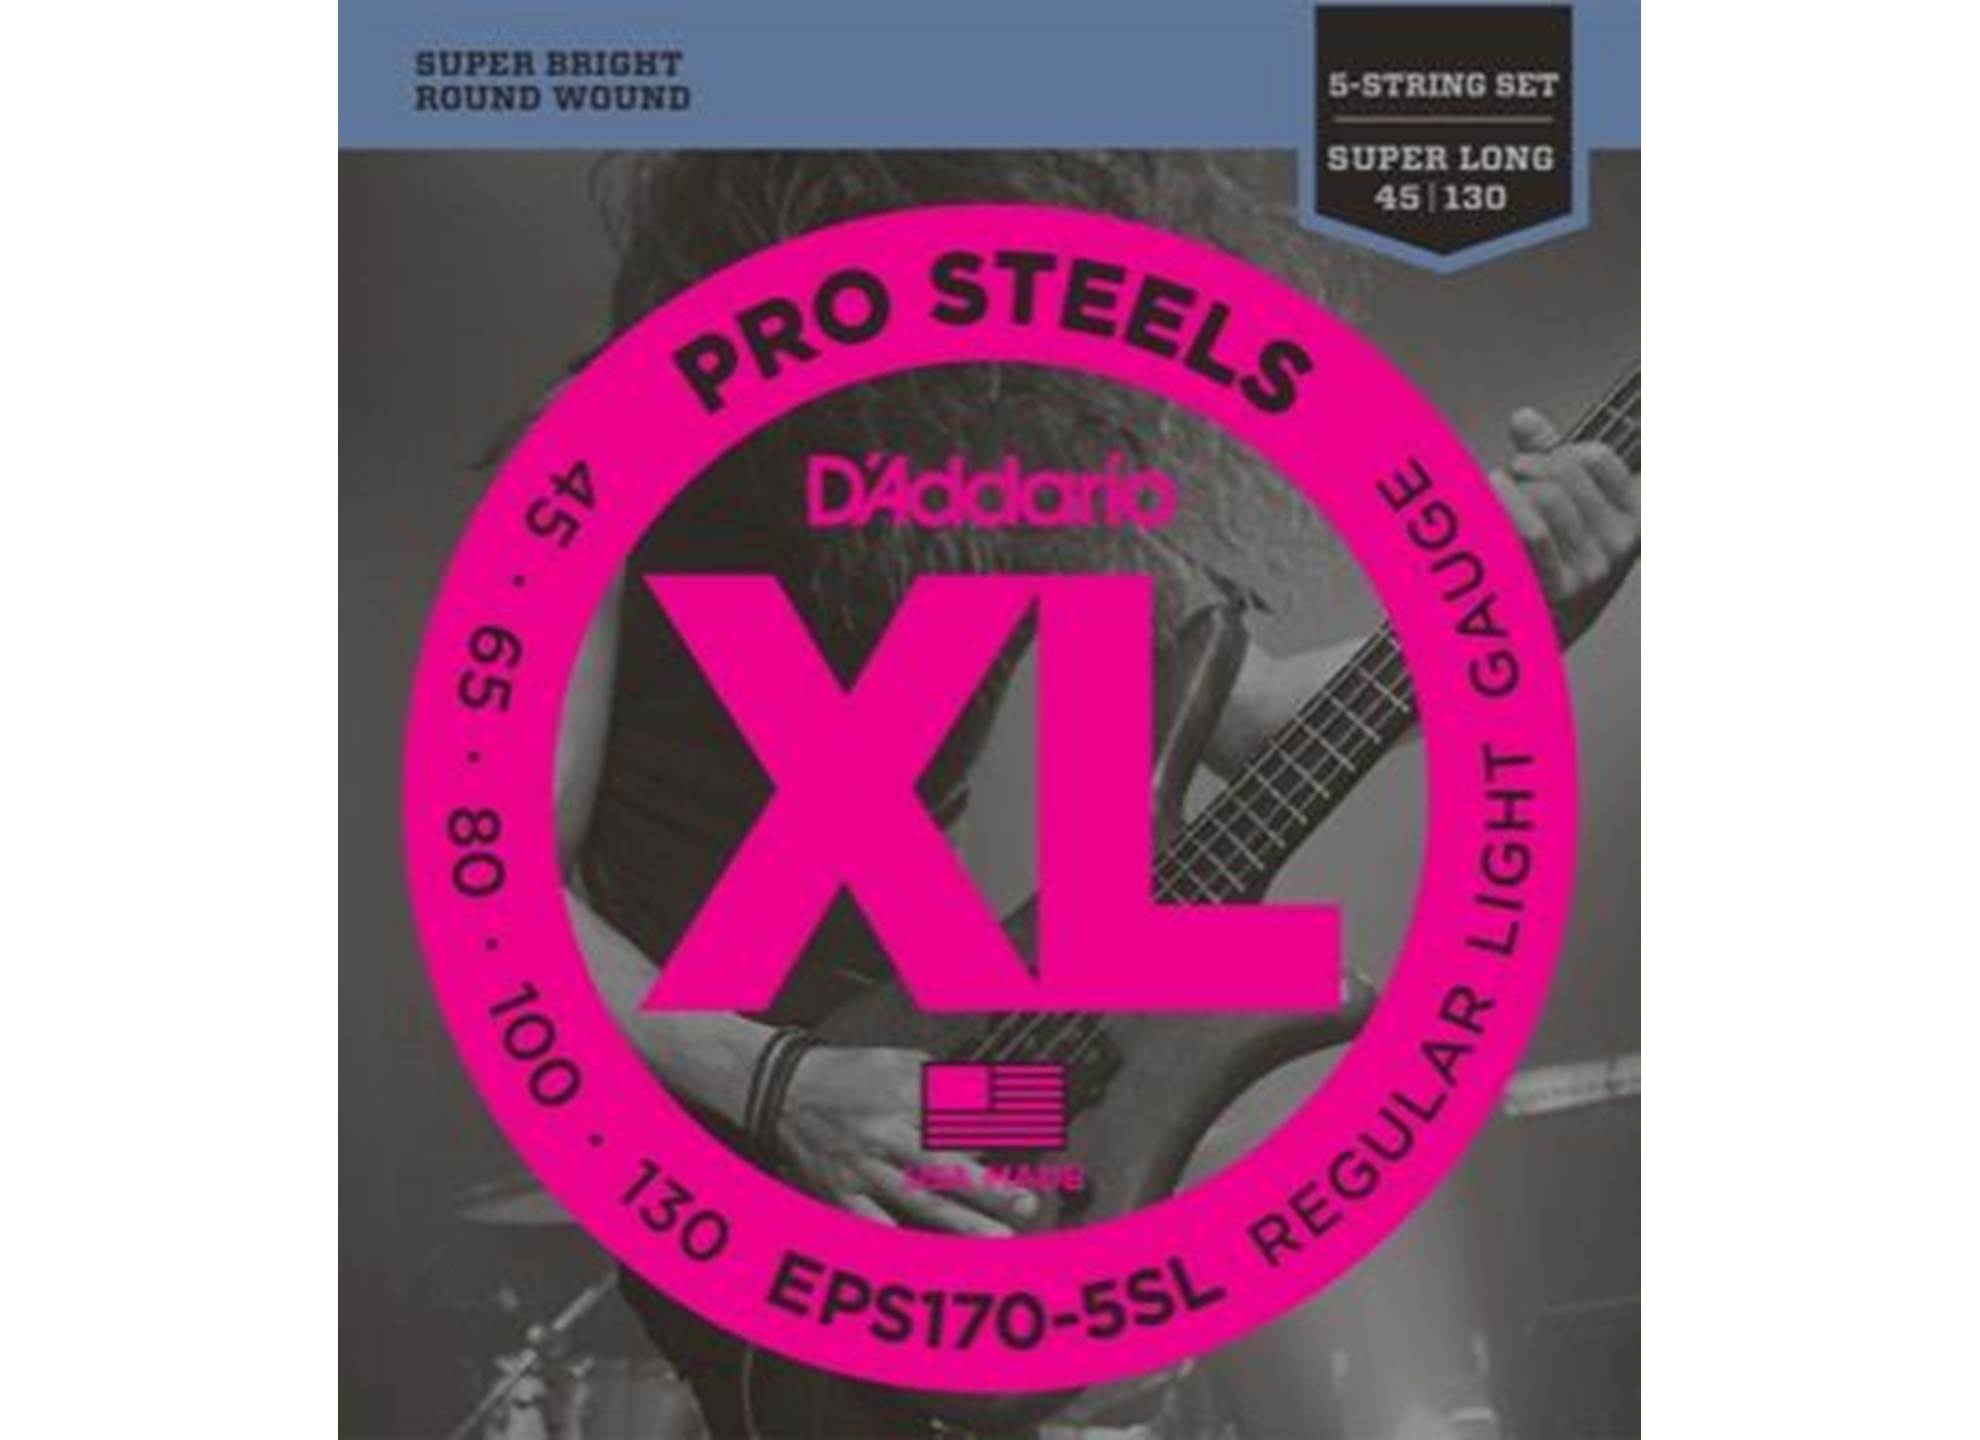 EPS170-5SL Pro Steels 45-130